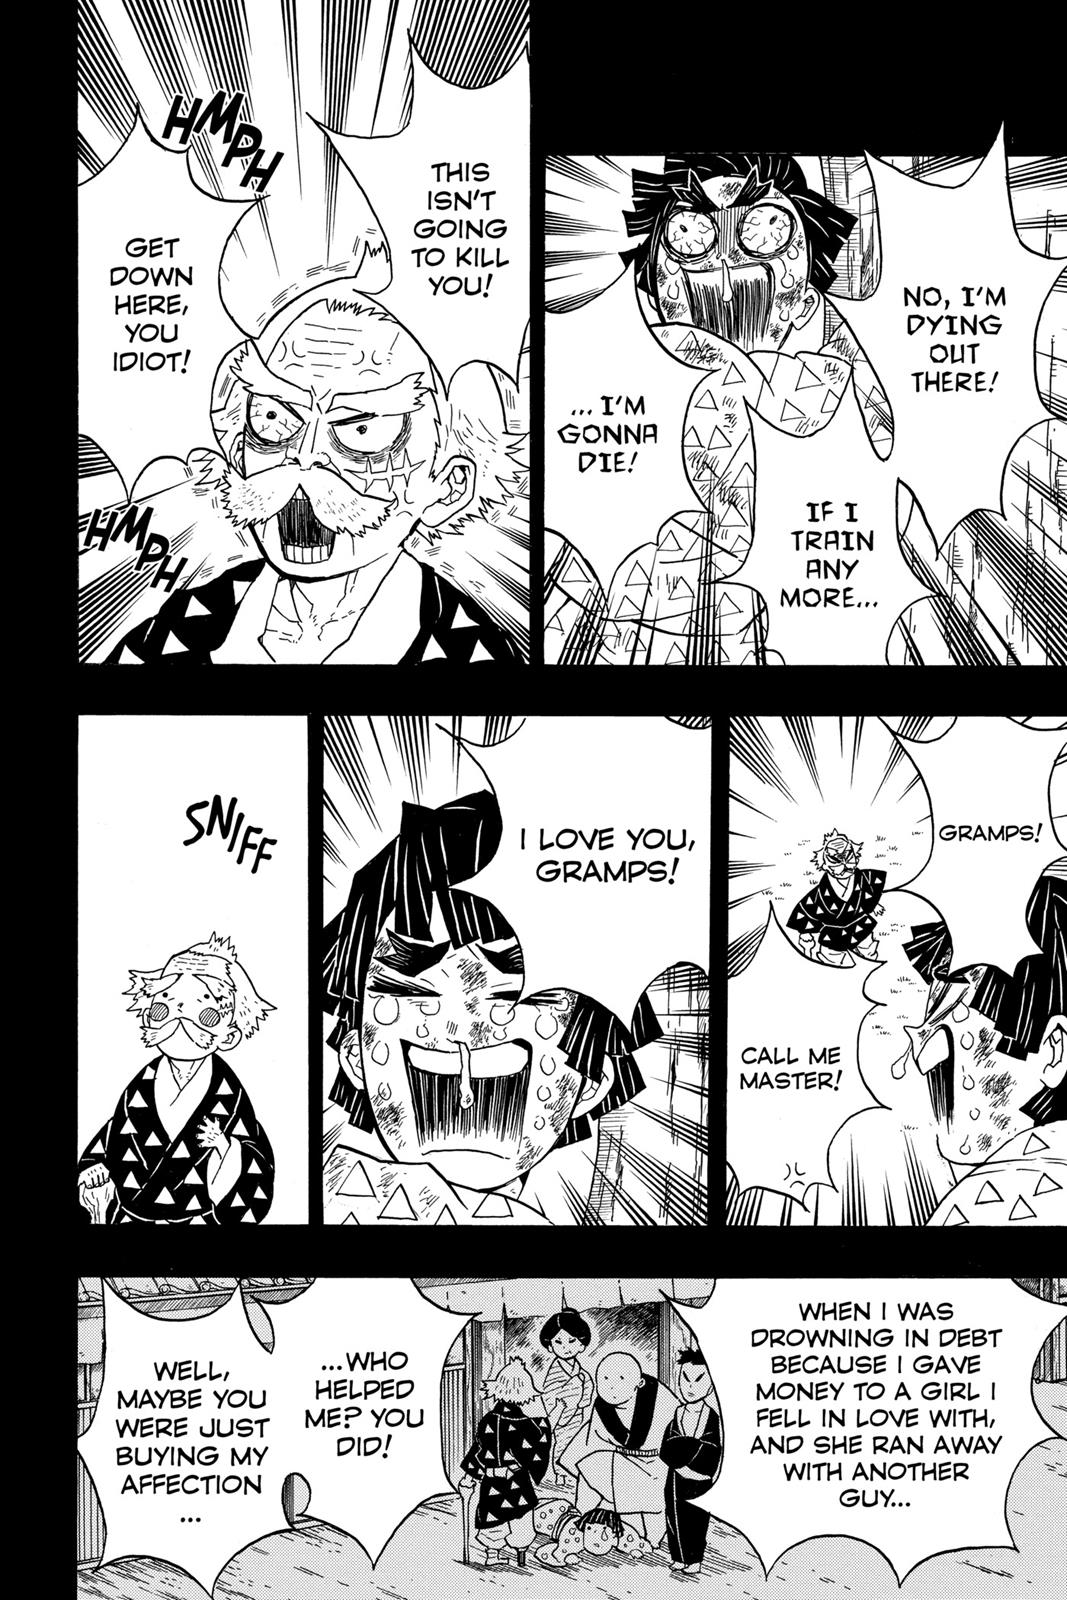 Demon Slayer Manga Manga Chapter - 33 - image 6